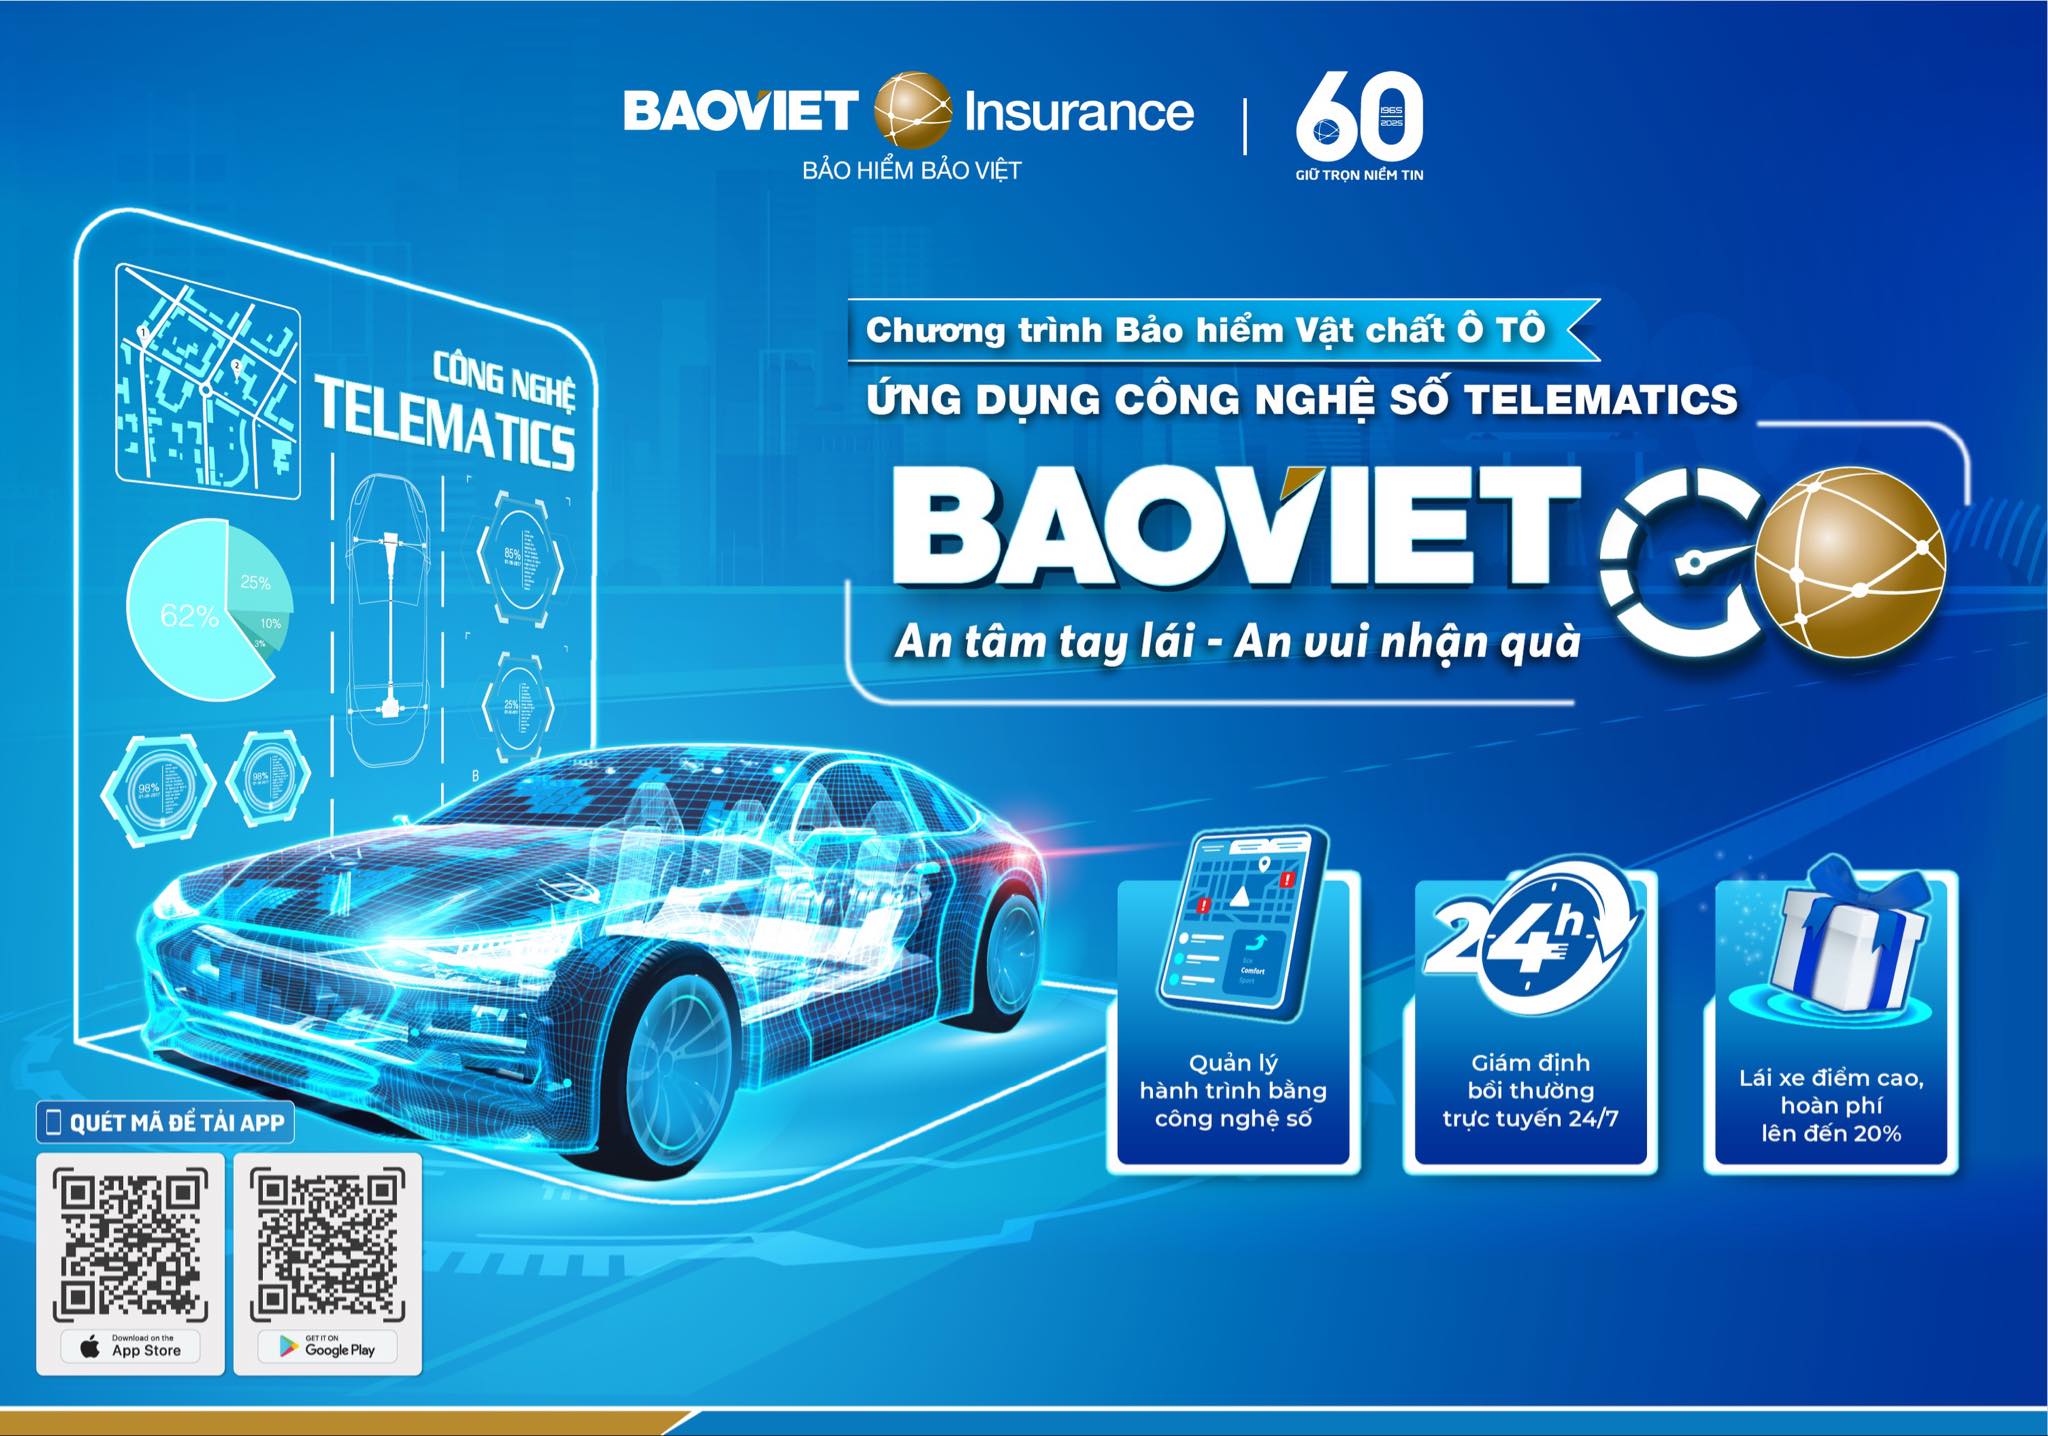 BAOVIET GO: Bảo hiểm xe ô tô ứng dụng công nghệ số đầu tiên tại Việt Nam